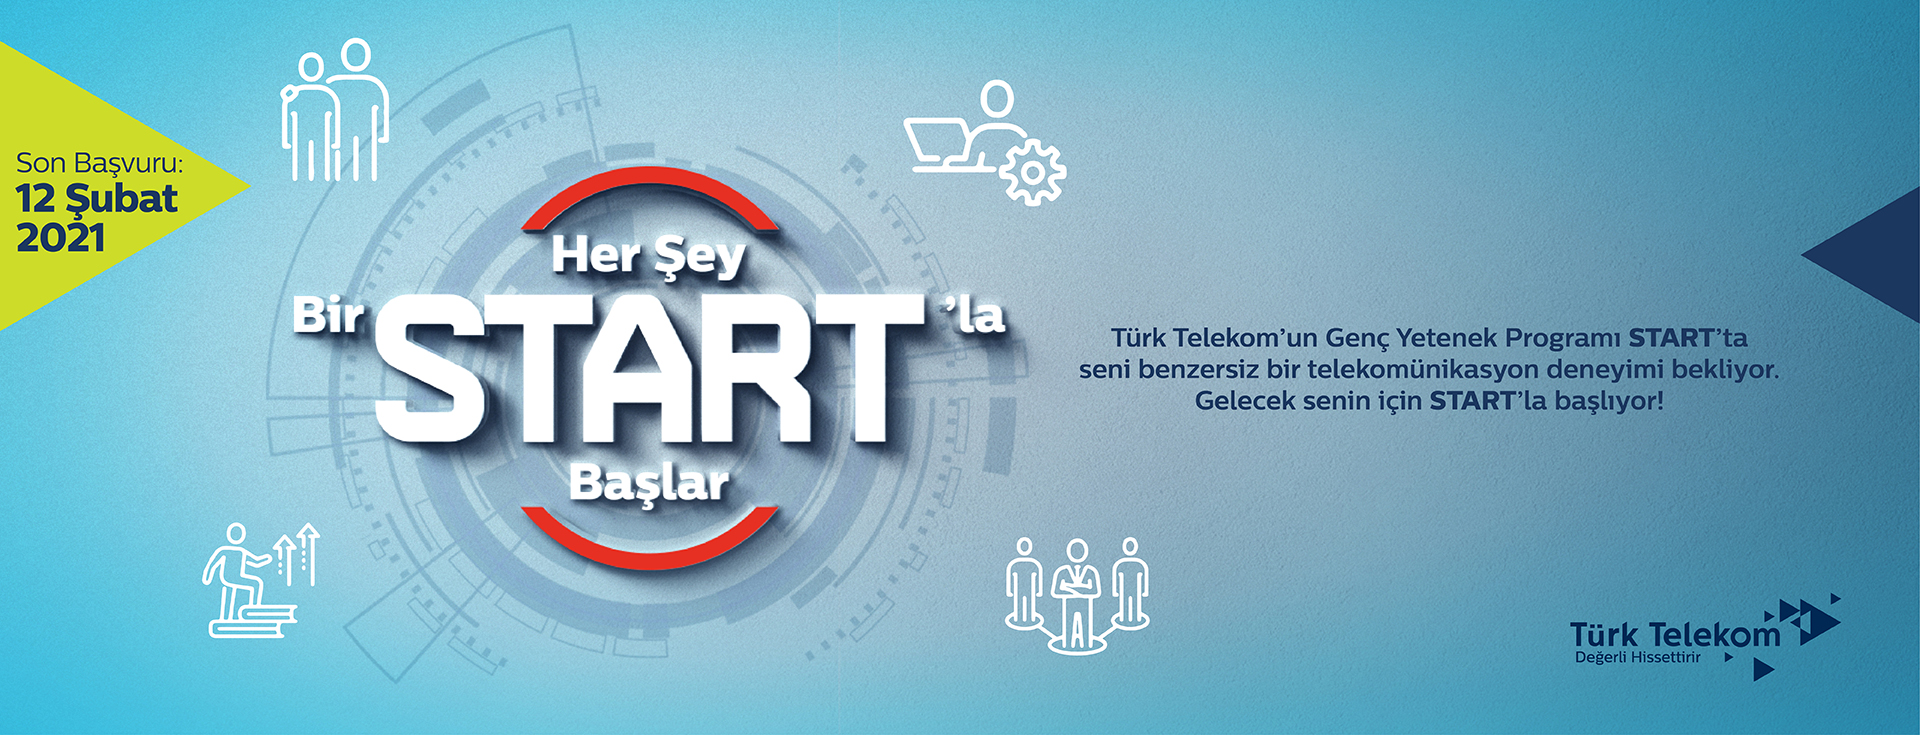 Kariyerine Türk Telekom’la START Vermen İçin 5 Neden